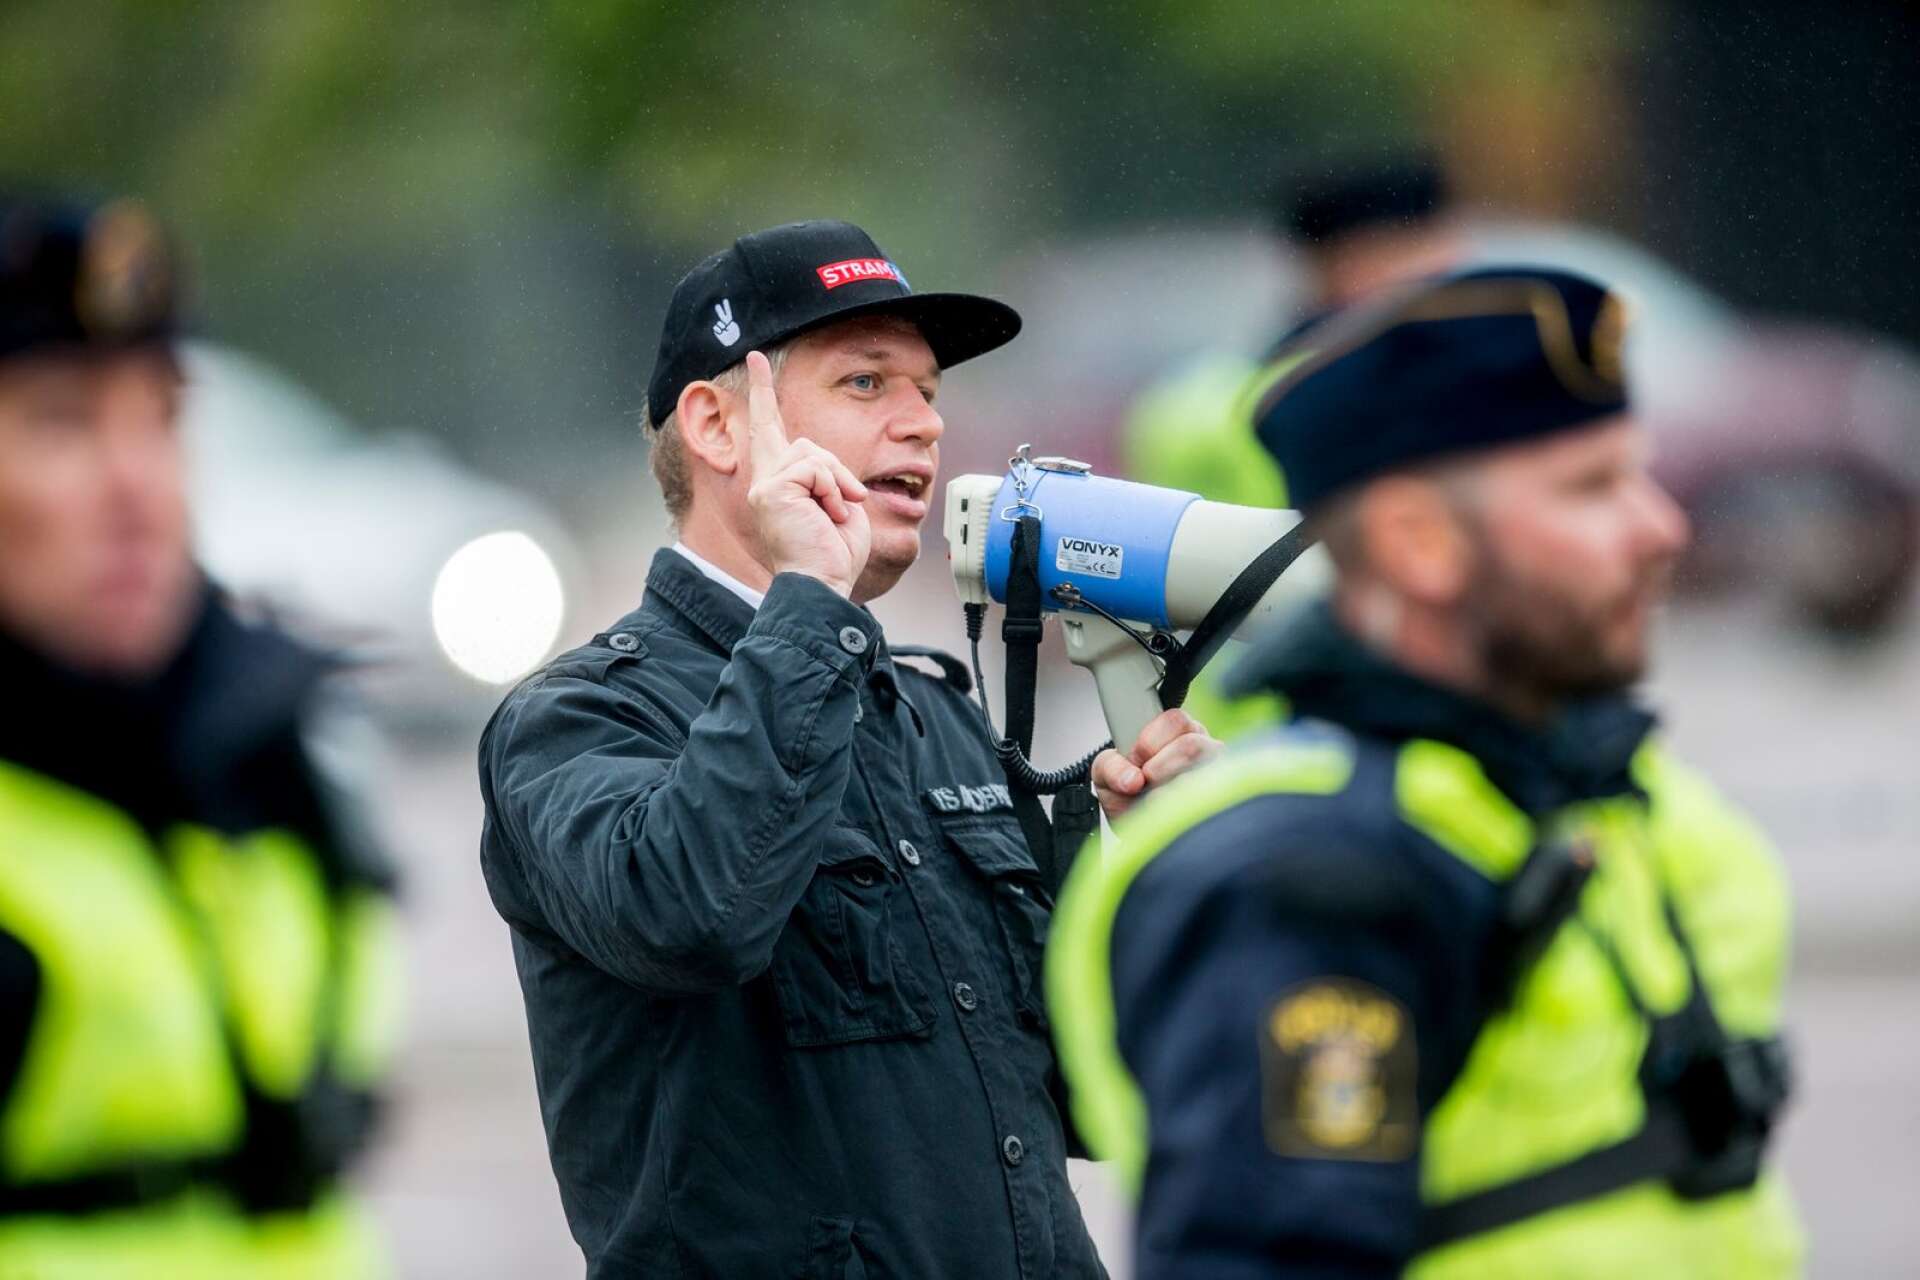 En regnig fredag i  juli anlände politikern Rasmus Paludan (Stram Kurs Sverige) till Kronoparken för att hålla en allmän sammankomst. Uppbådet av polis och media var stort – men åhörarna få.